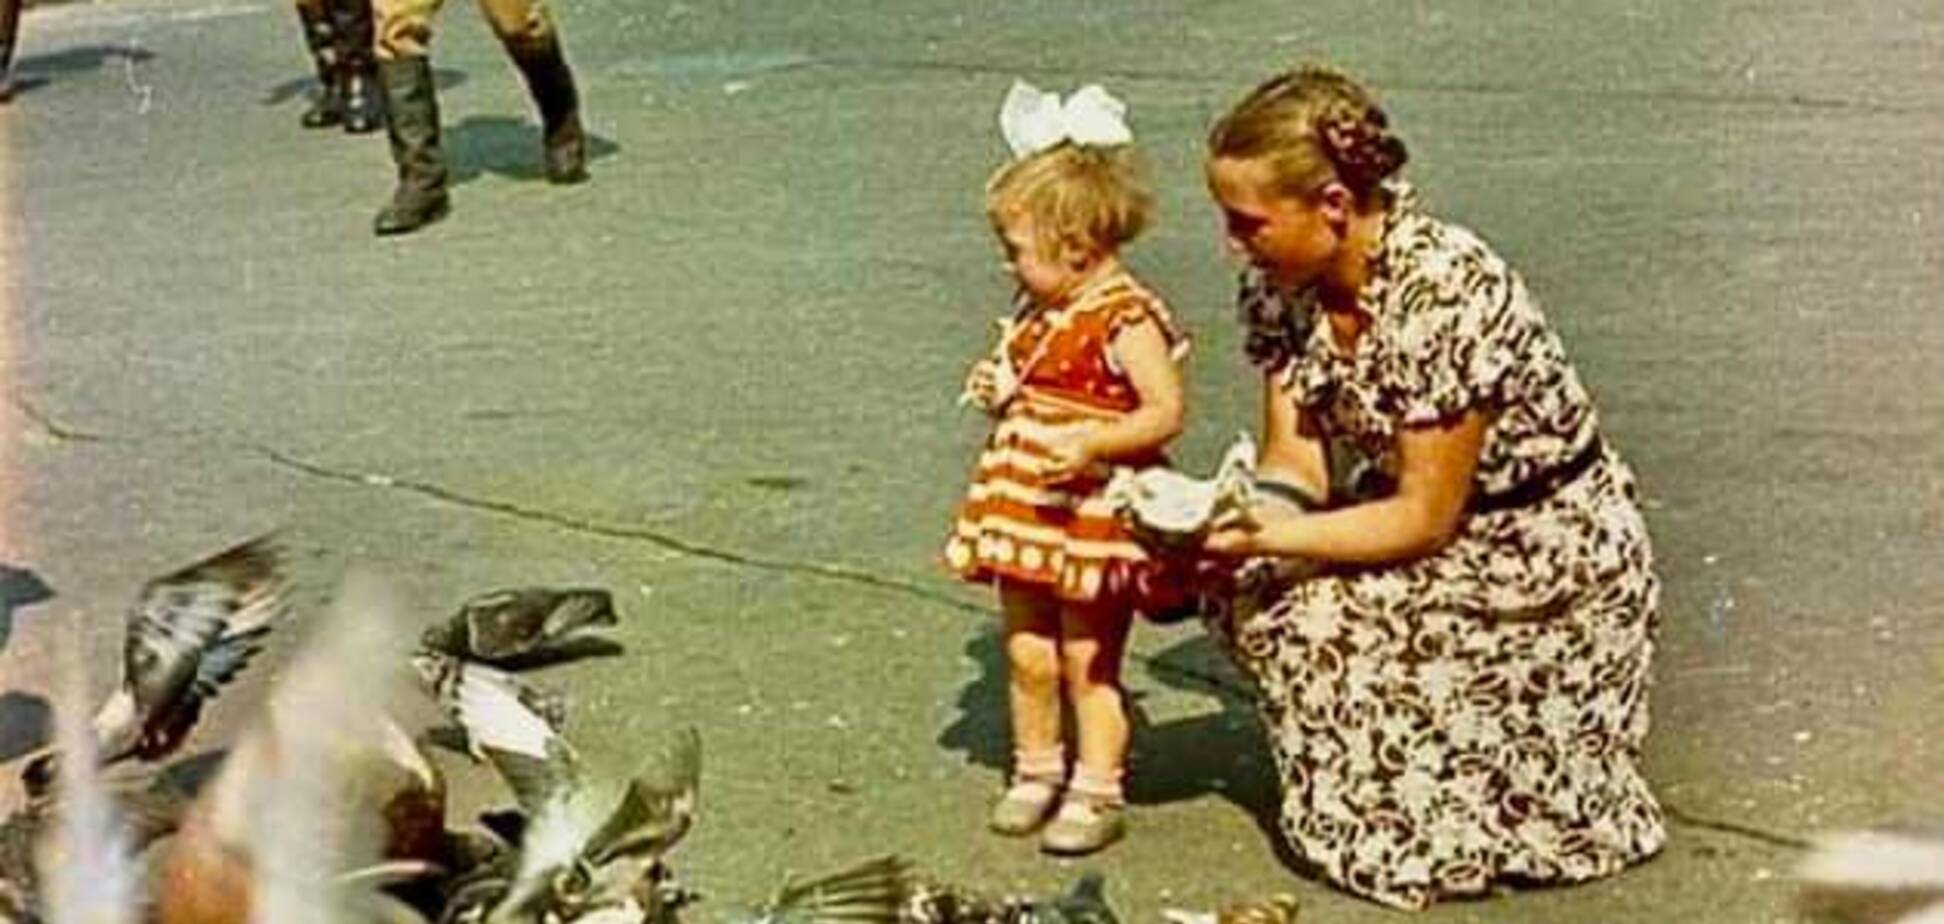 Бессарабська площа у Києві у 1950-1960-их роках